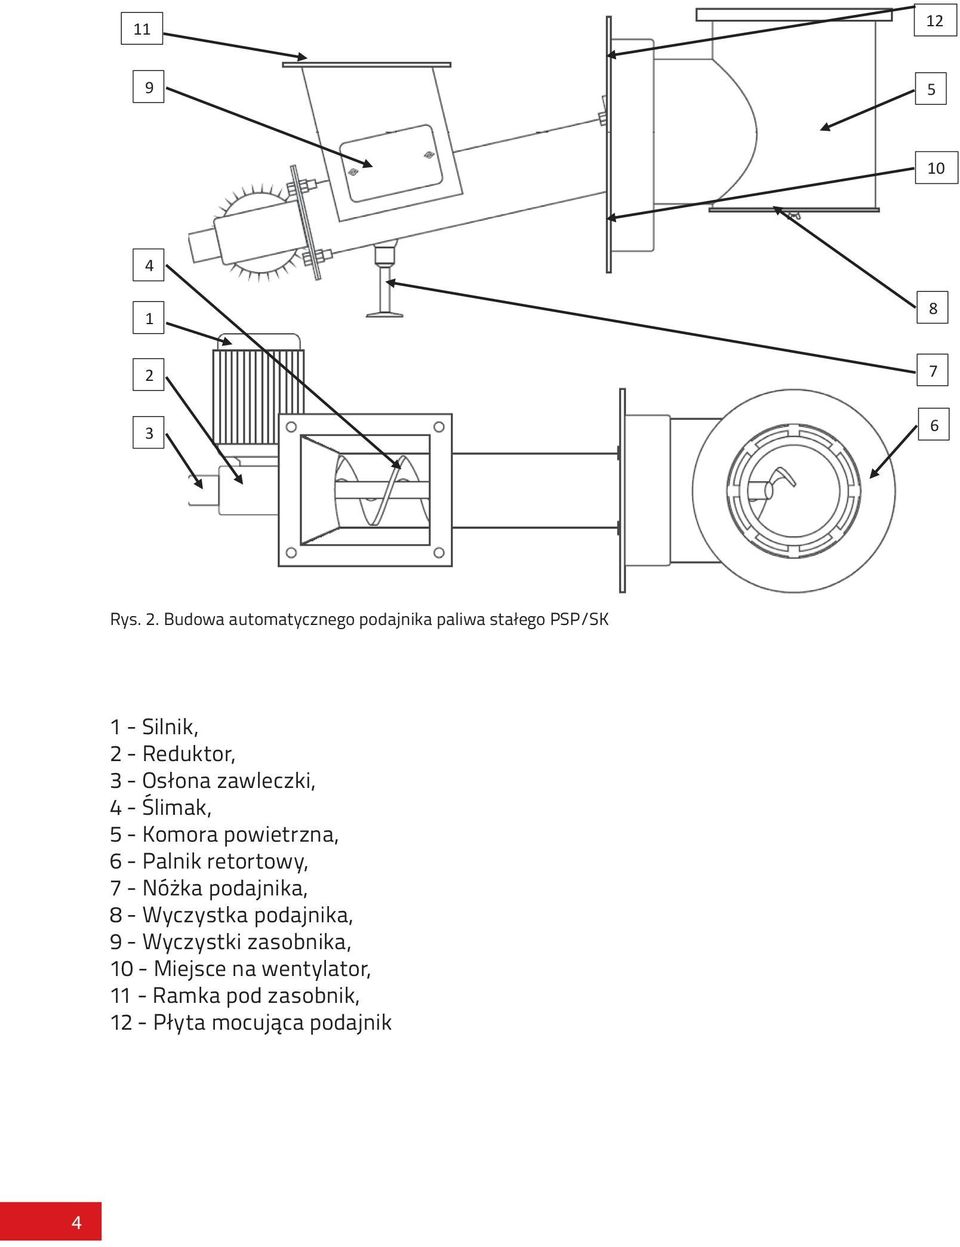 Budowa automatycznego podajnika paliwa stałego PSP/SK 1 - Silnik, 2 - Reduktor, 3 -